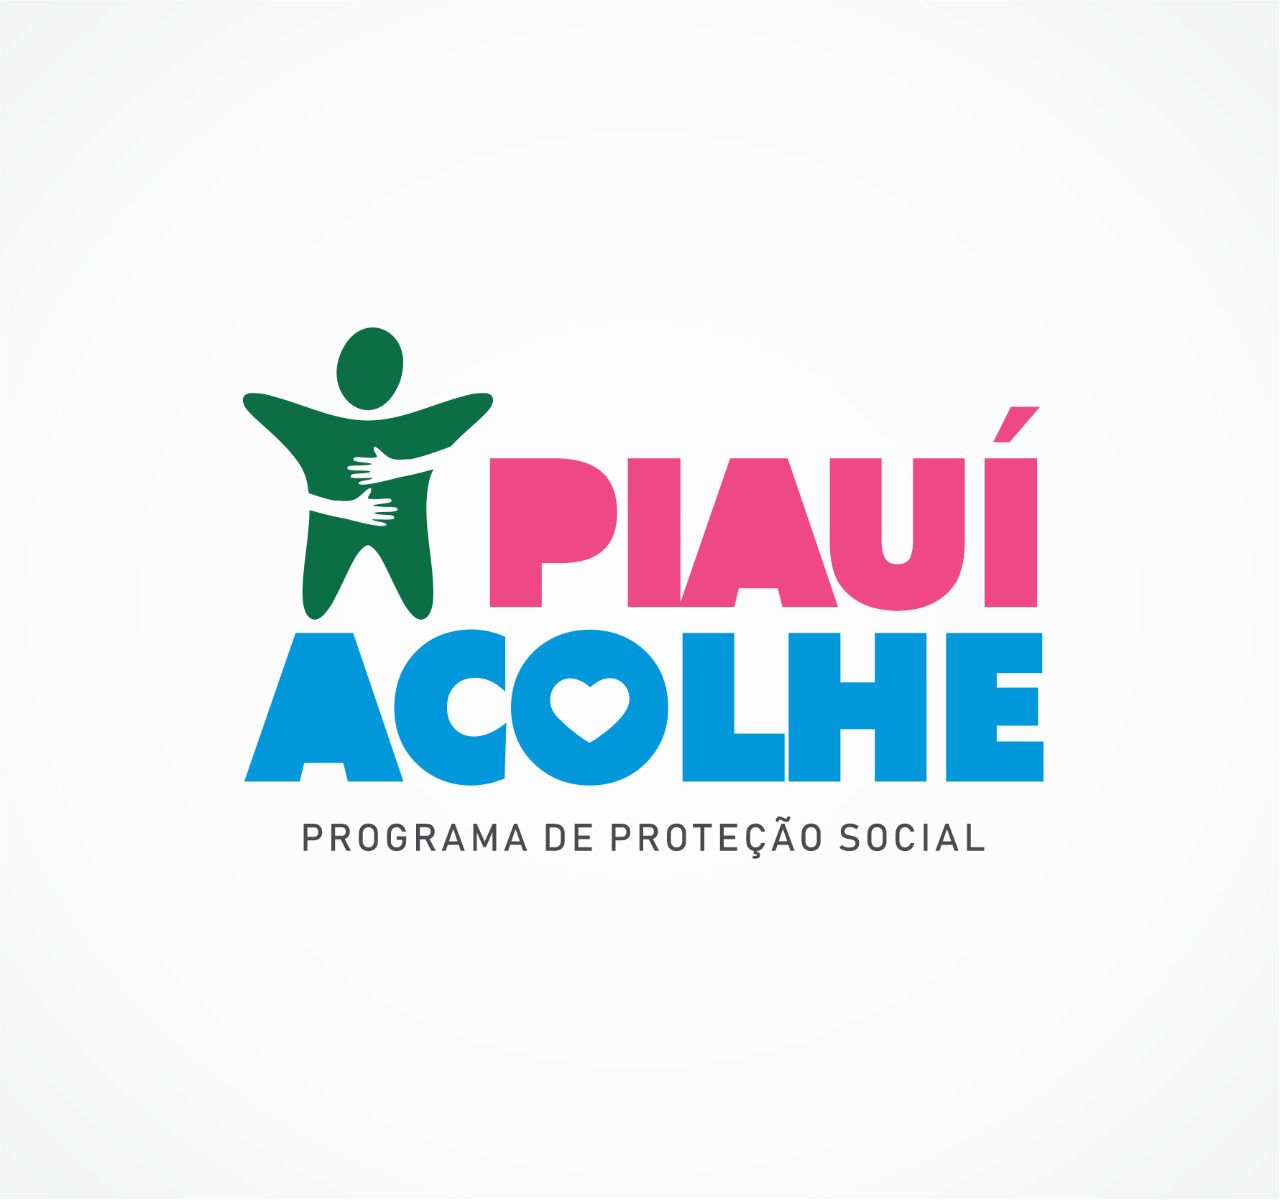 Logo do programa de proteção social Piauí Acolhe, que representa uma criança sendo abraçada, e abaixo está escrito "Programa de Proteção Social".